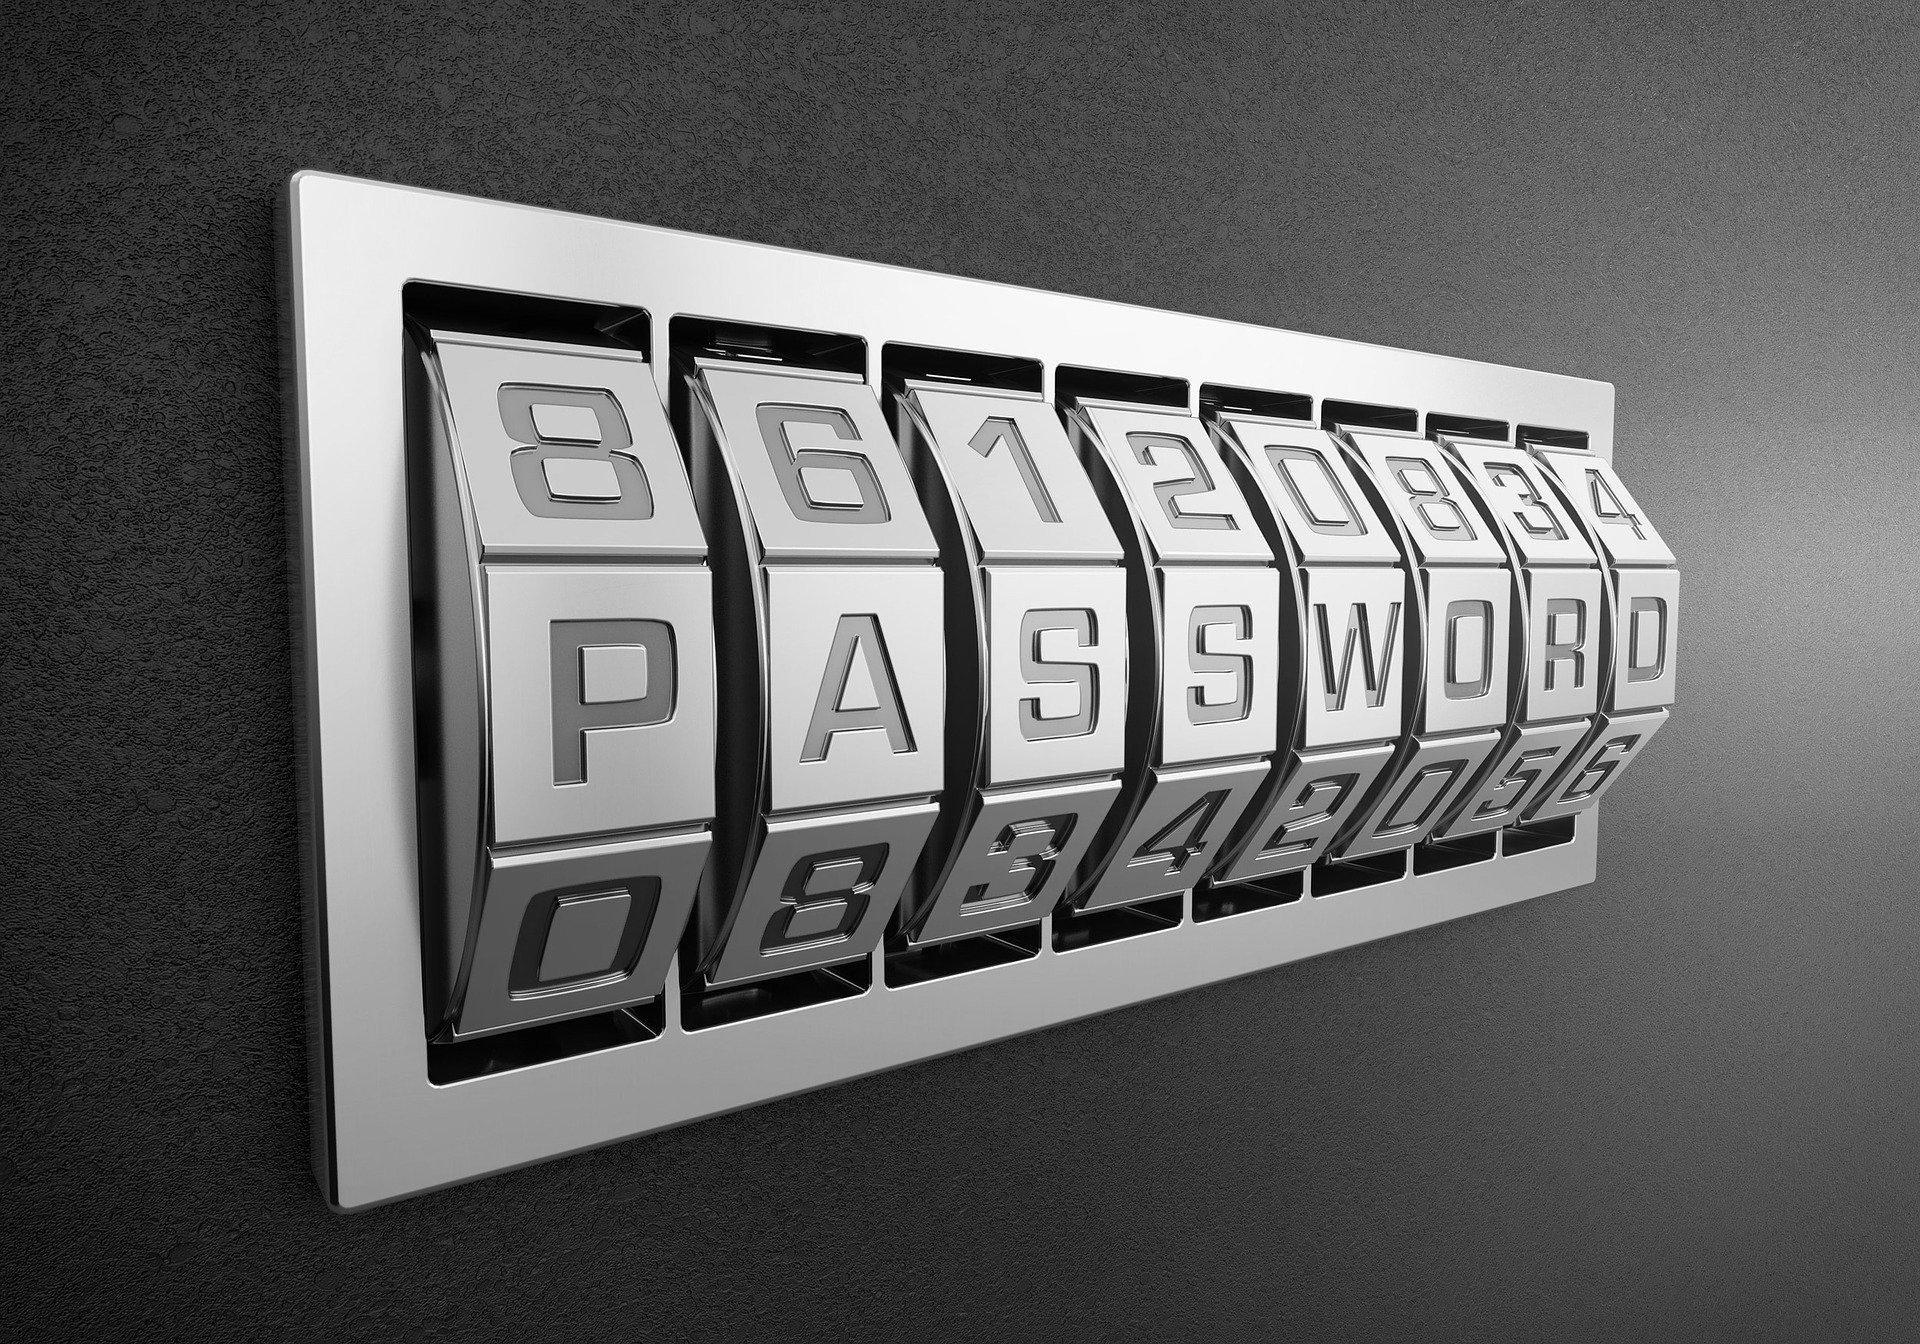 Як часто потрібно міняти паролі — поради експертів